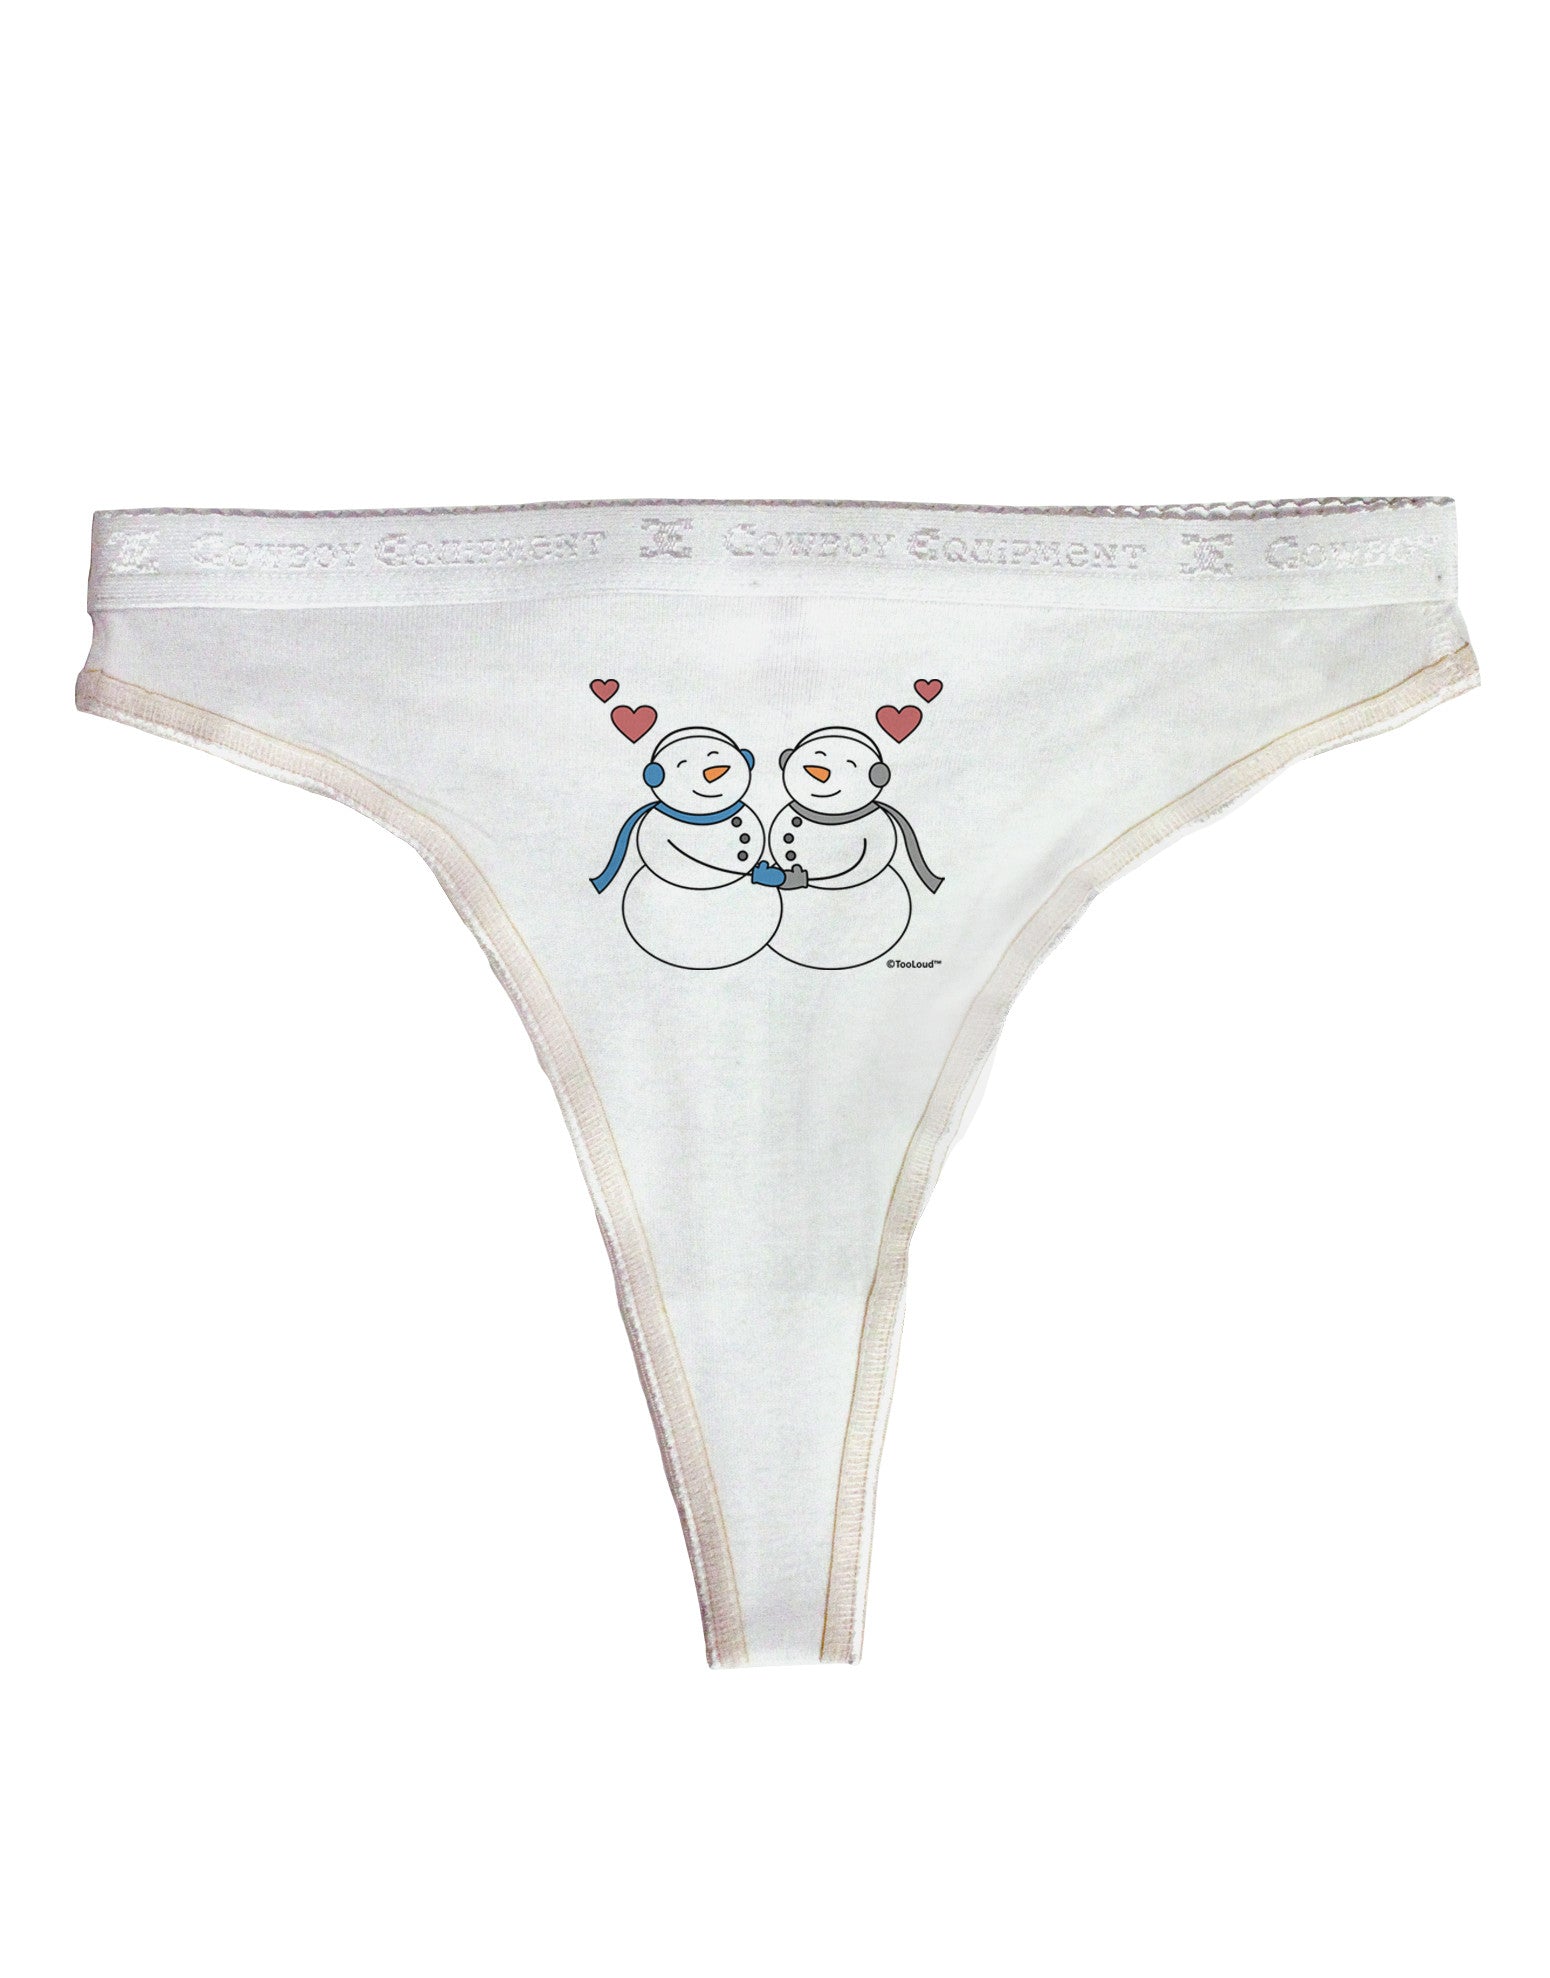 Snow Women Women's Thong Underwear